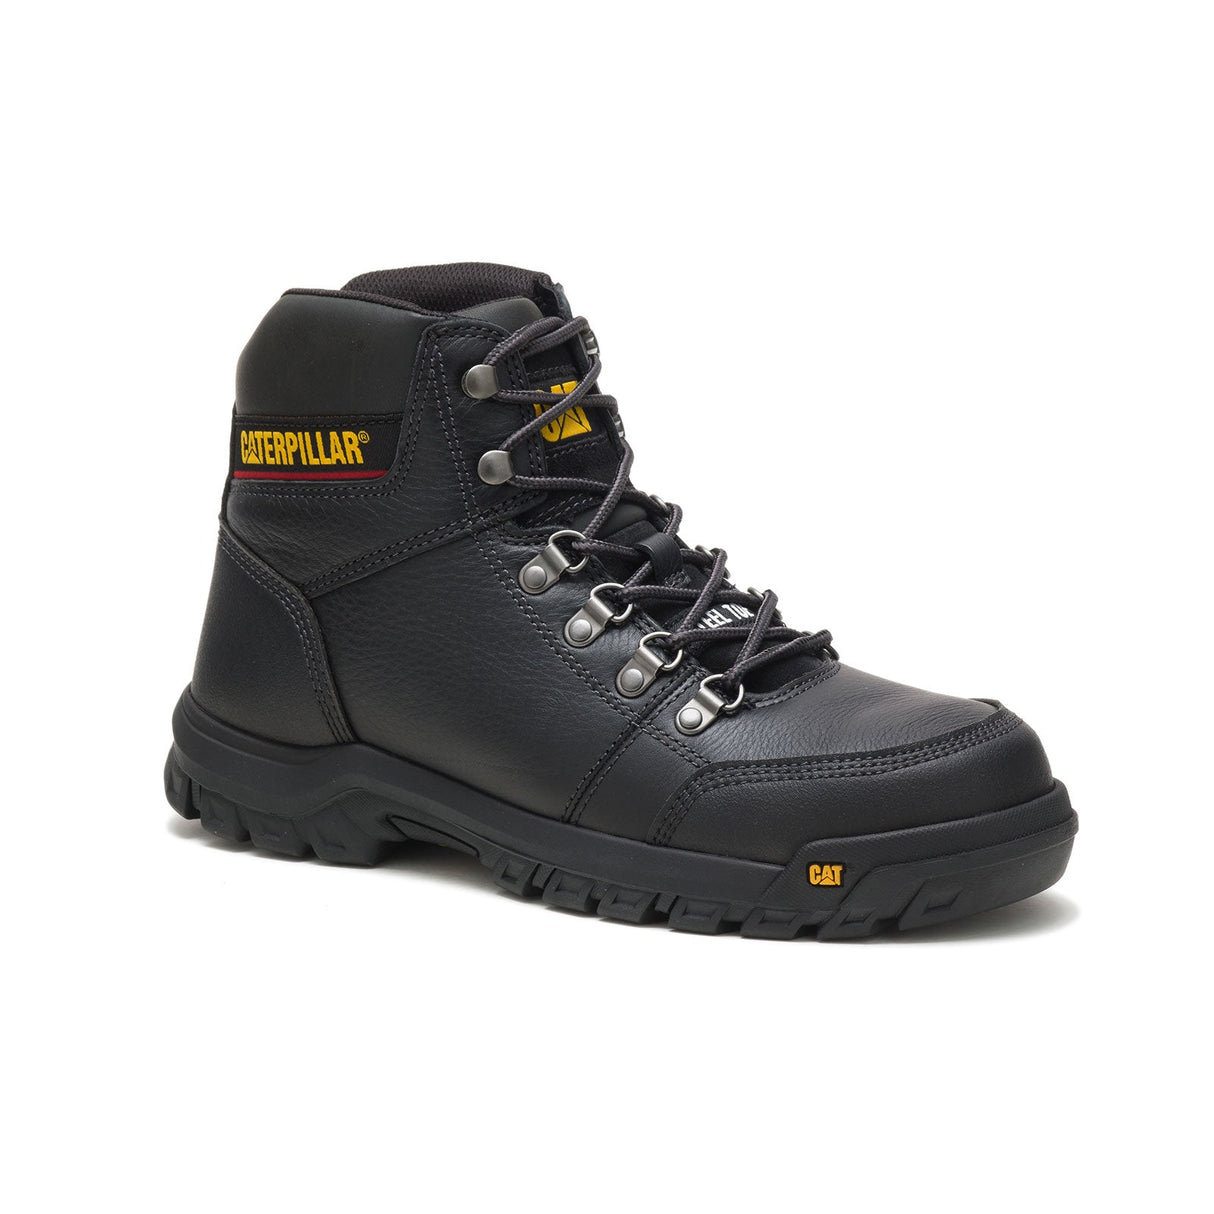 Caterpillar Outline Men's Steel-Toe Work Boots P90800-2